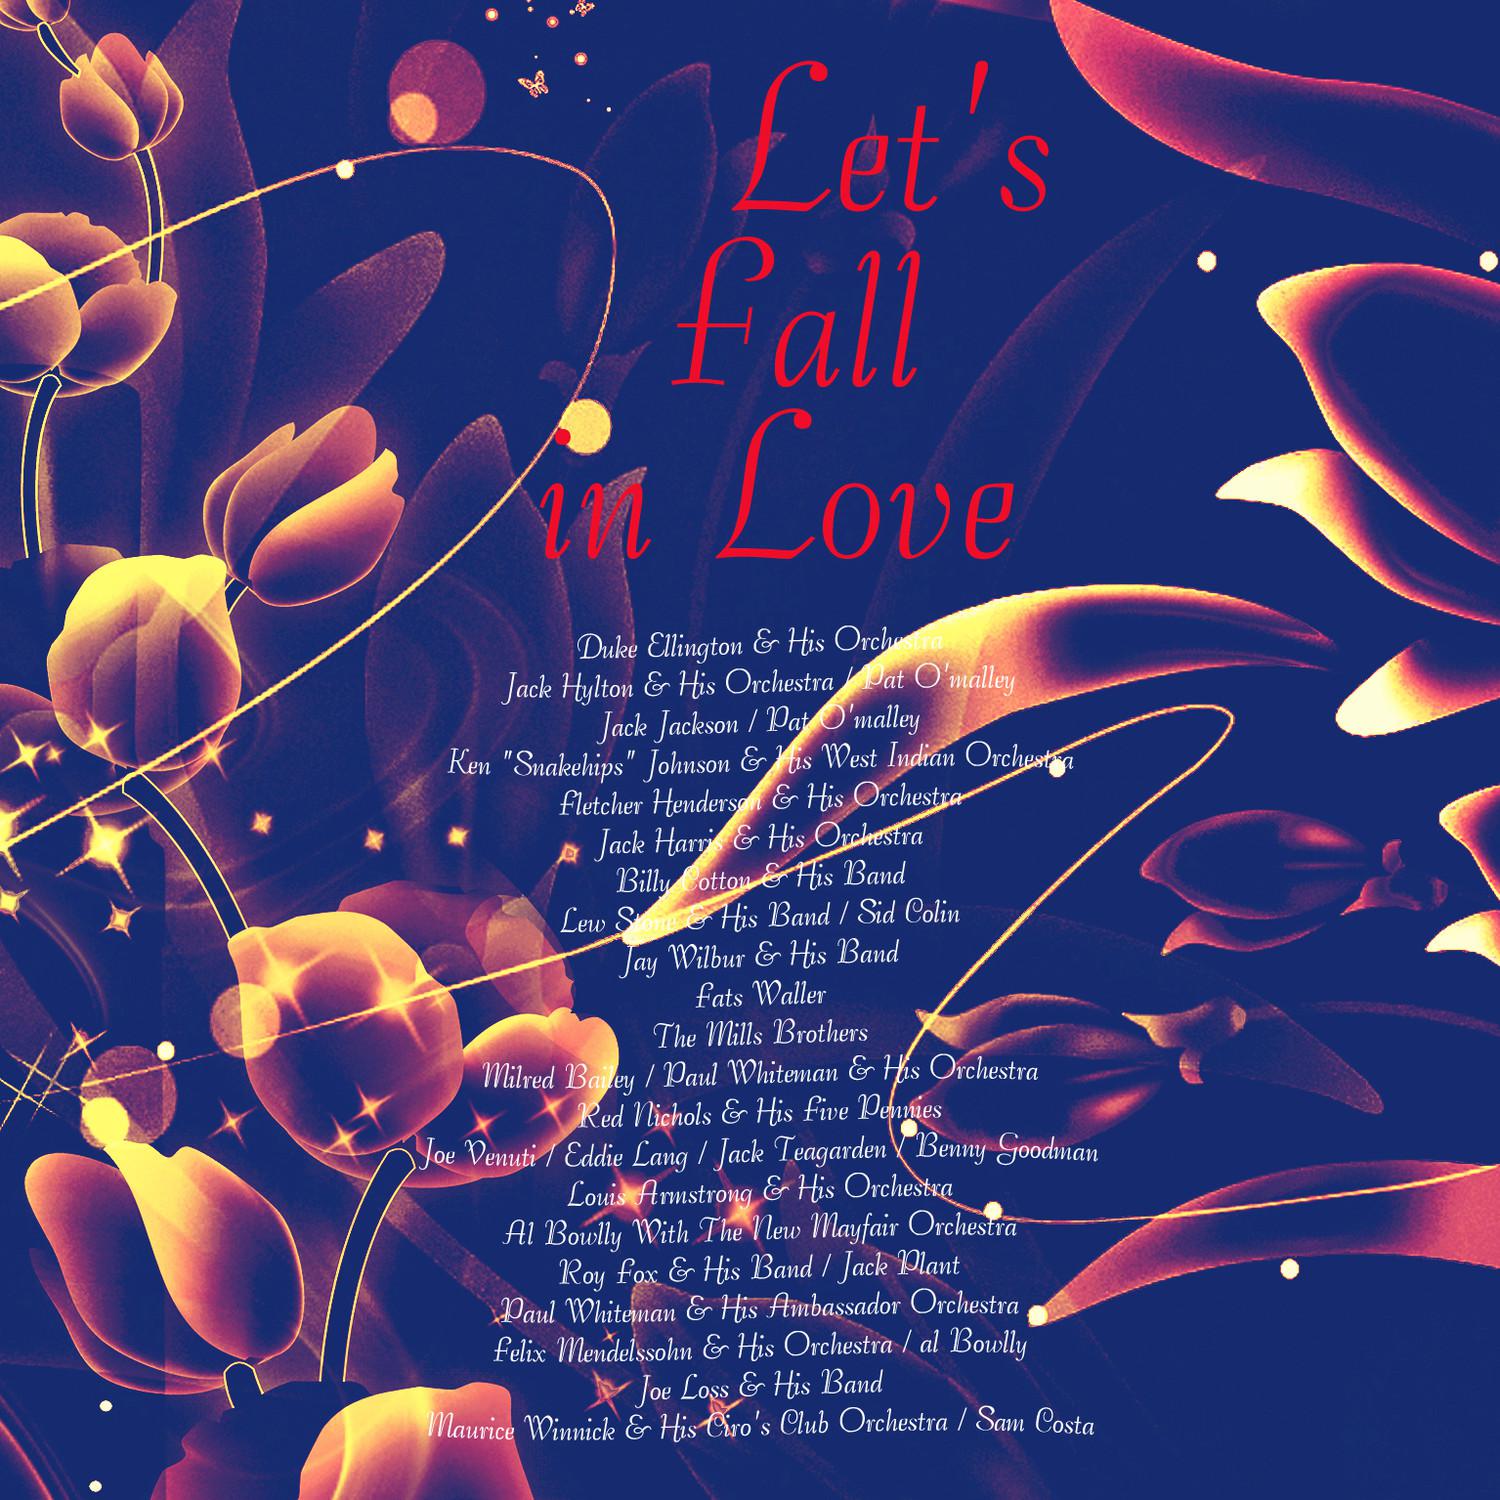 Joe Loss & His Band - Let's Fall in Love